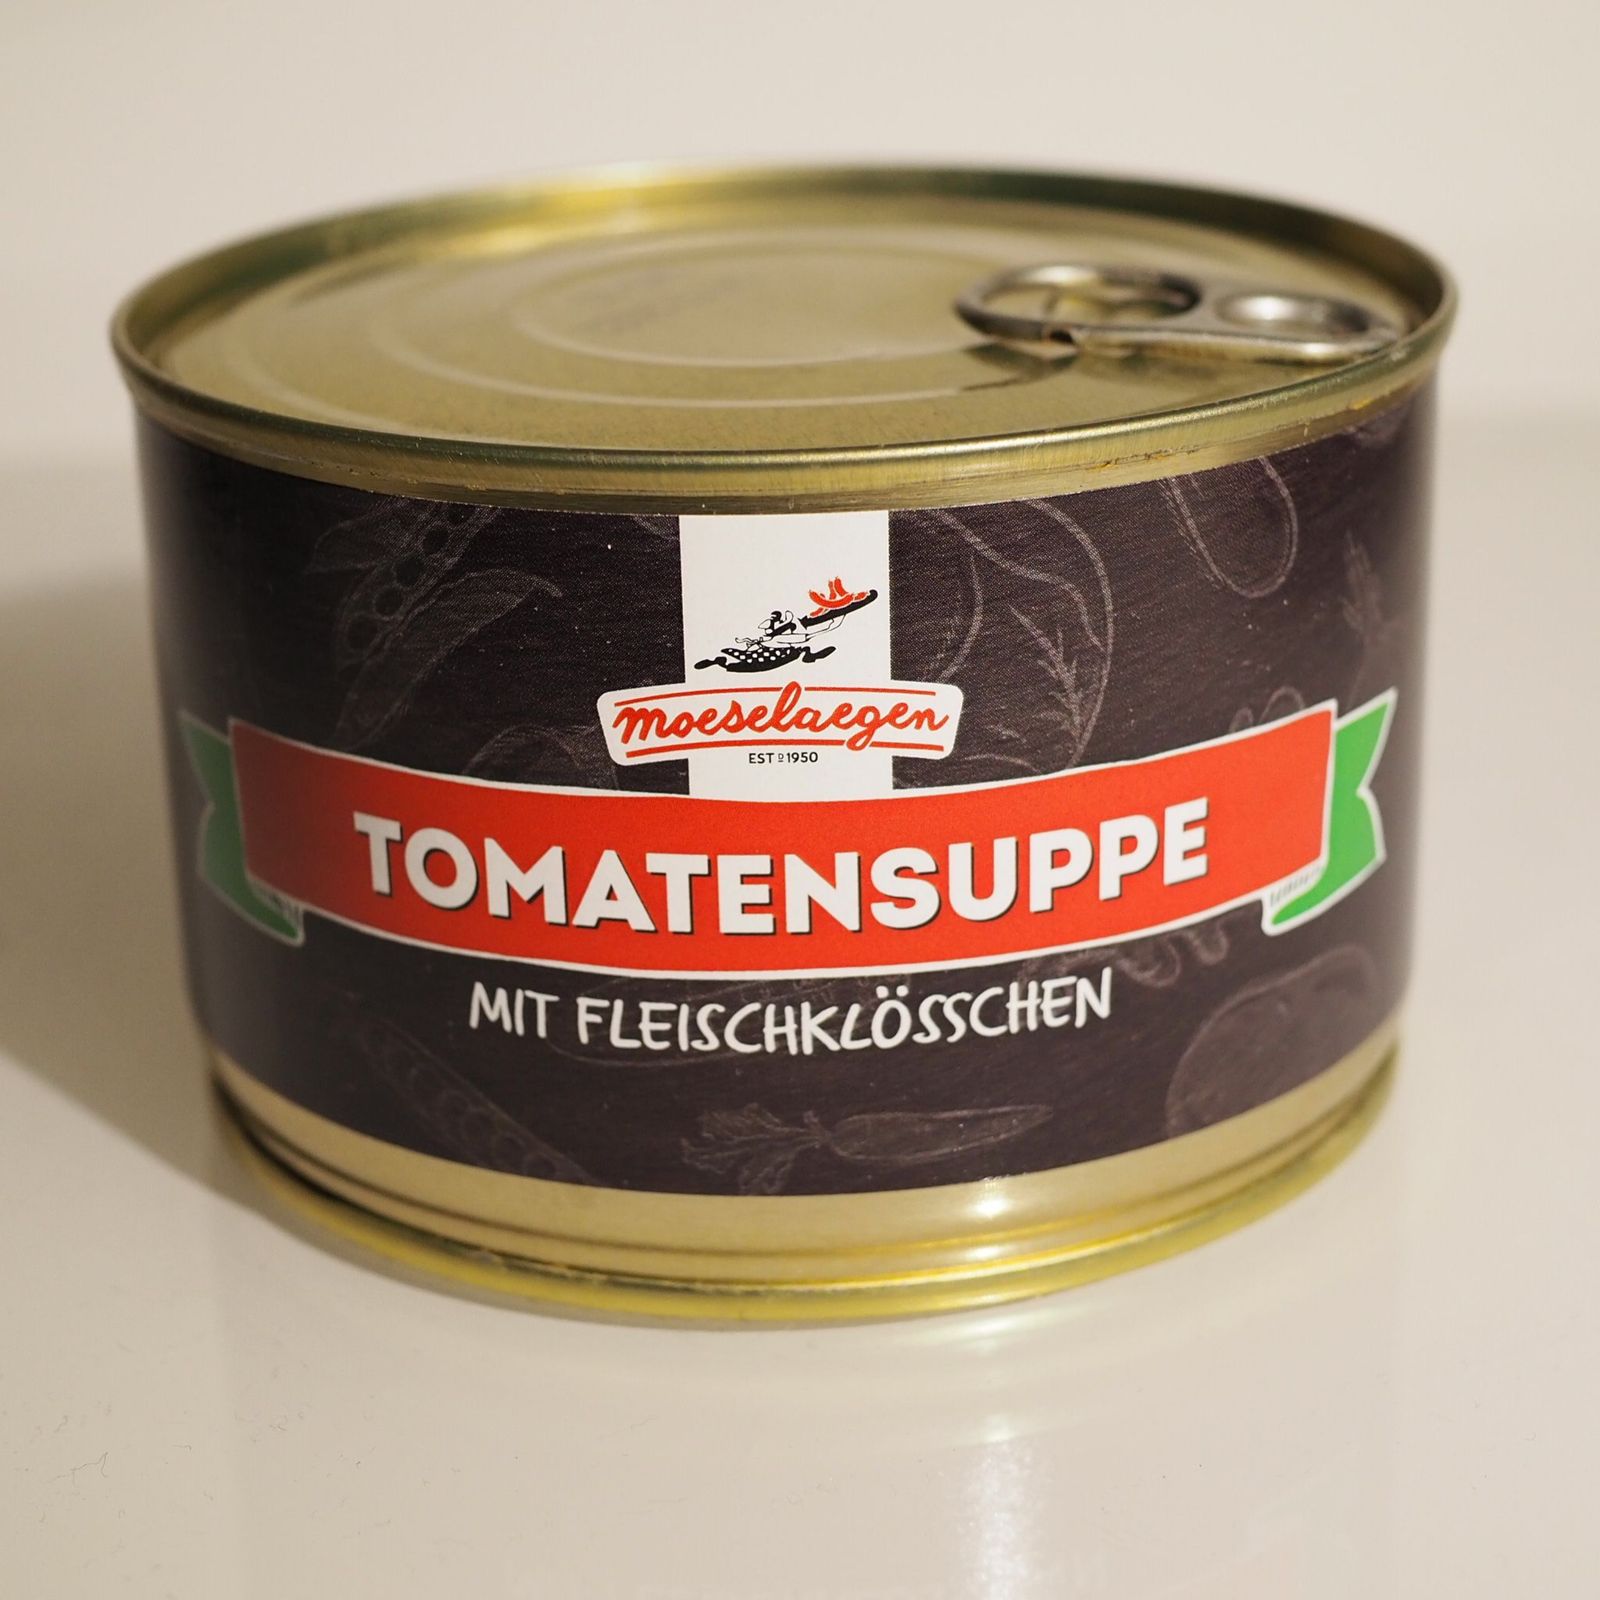 Metzgerei Moeselaegen – Tomatensuppe mit Fleischklößchen 400g – LADEN ...